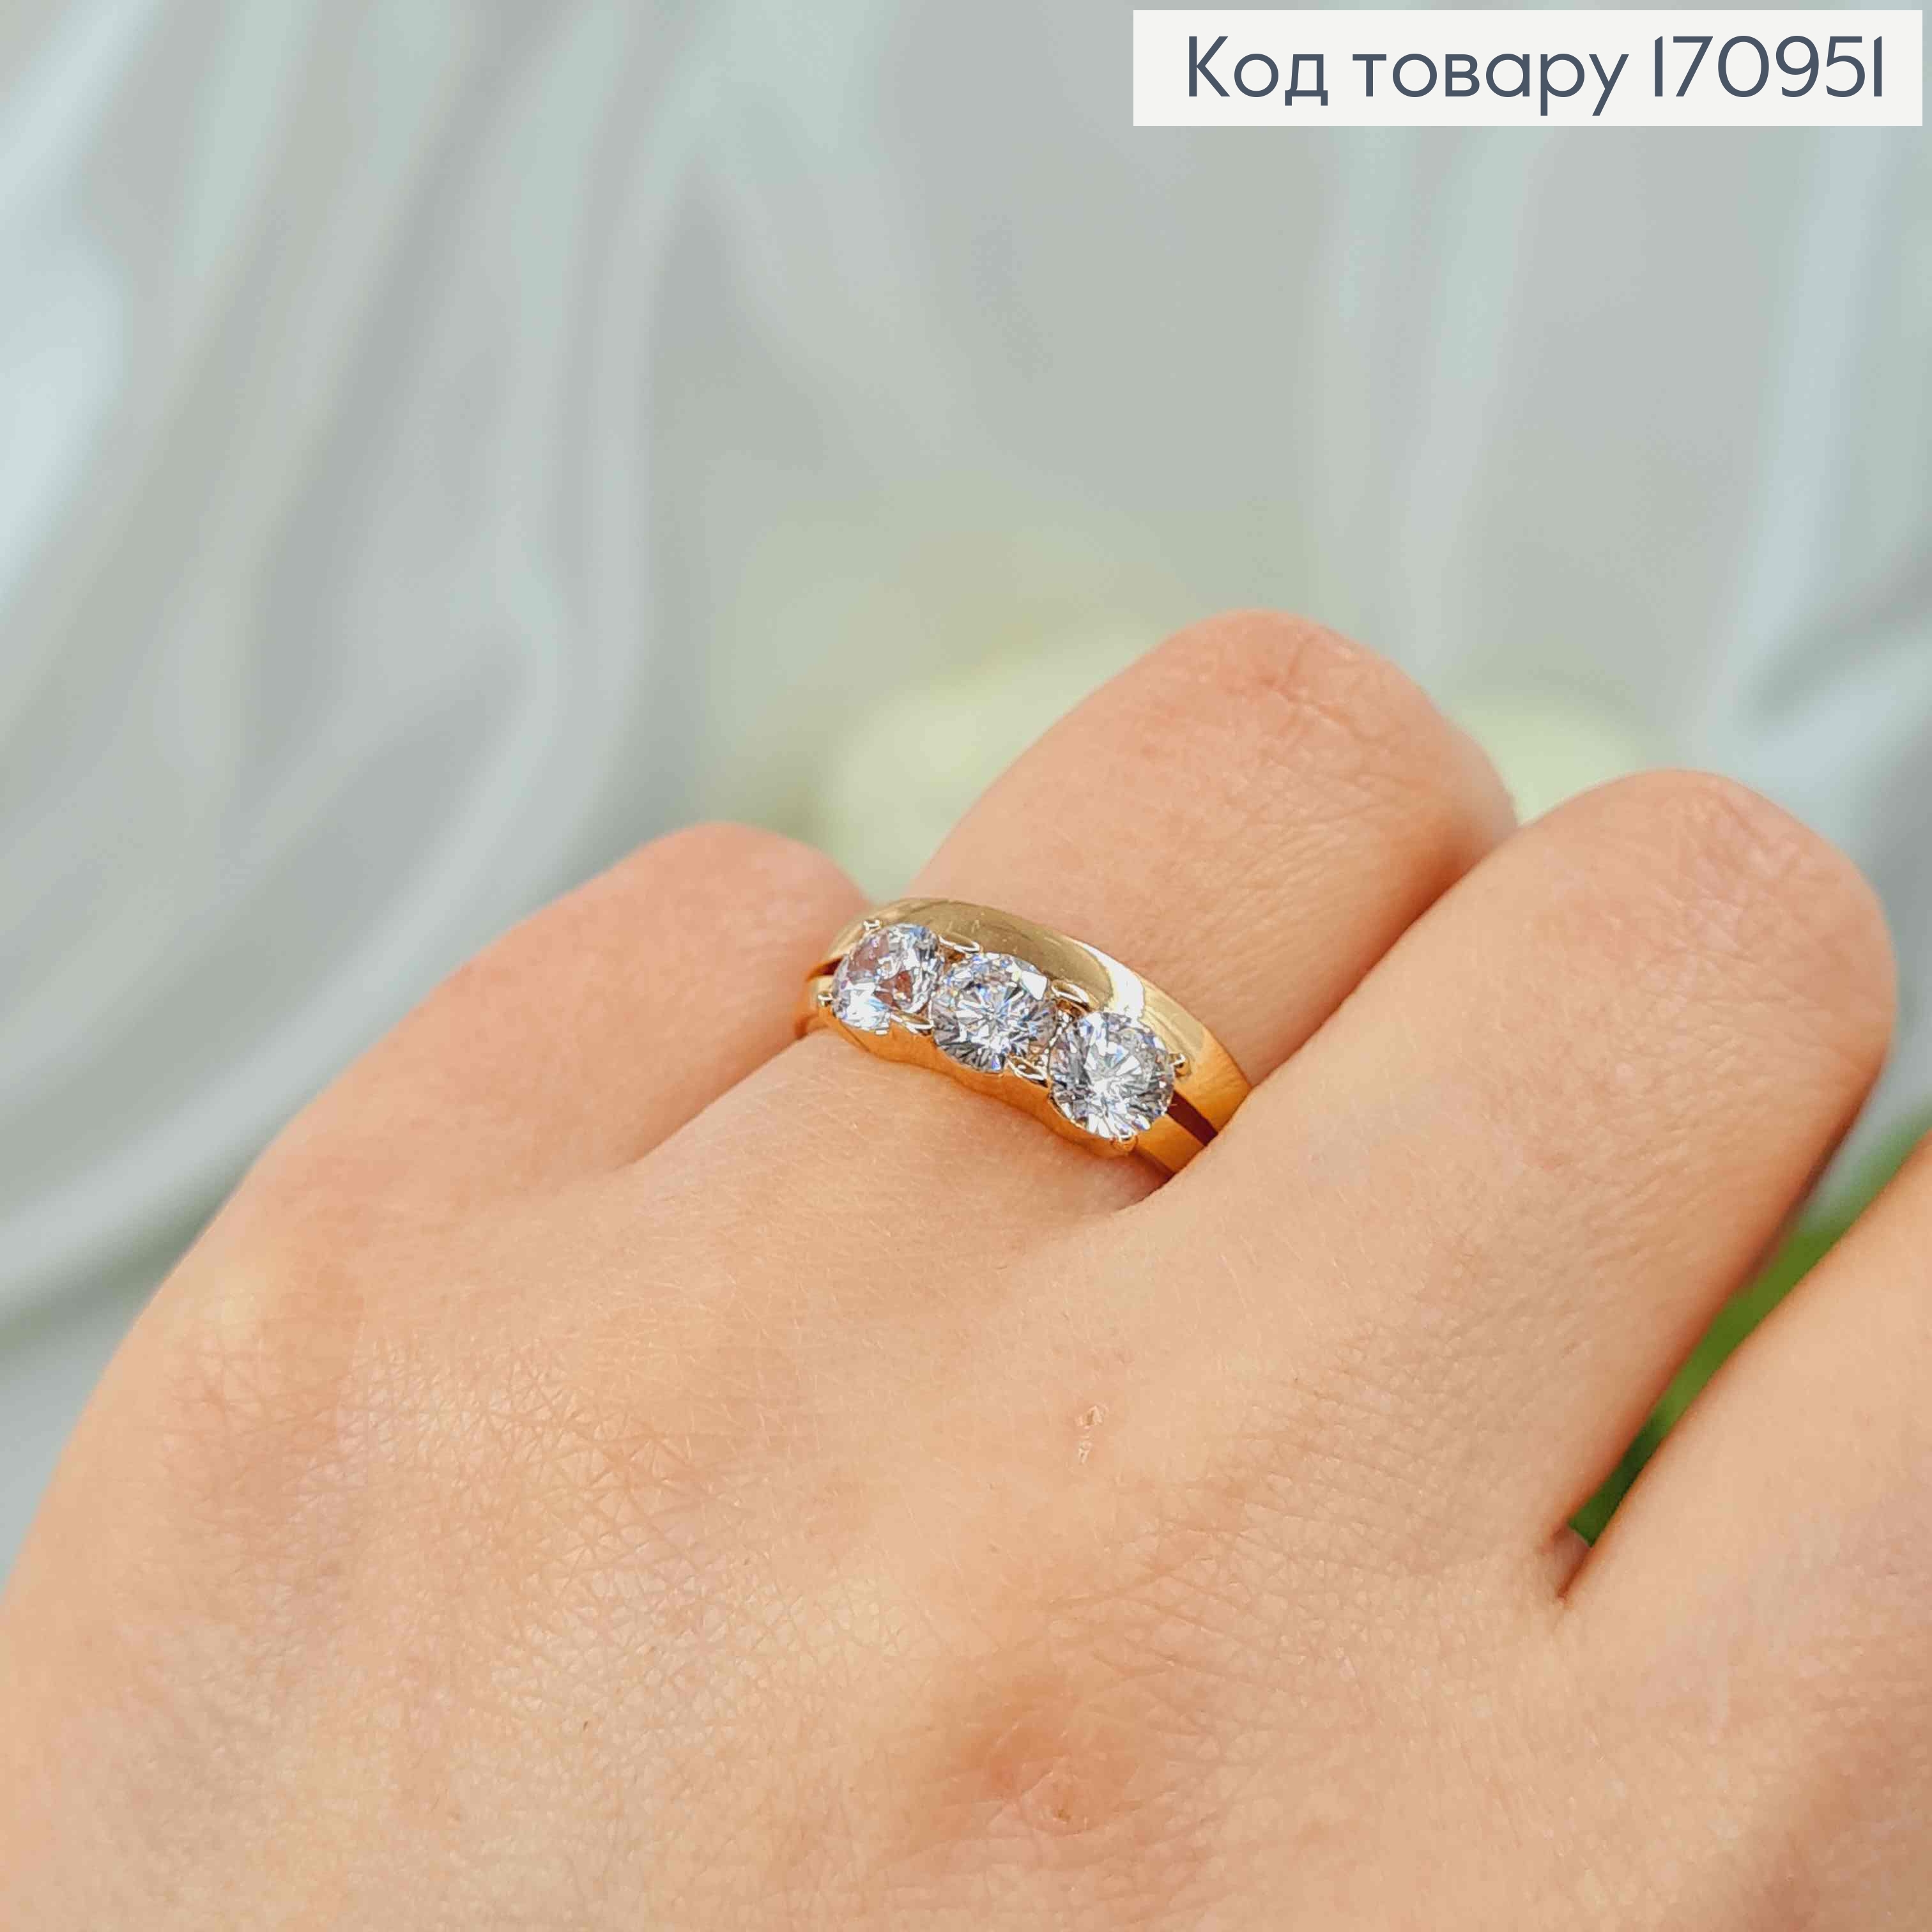 Кольцо двойное, с тремя большими камнями, Xuping 18K 170951 фото 2